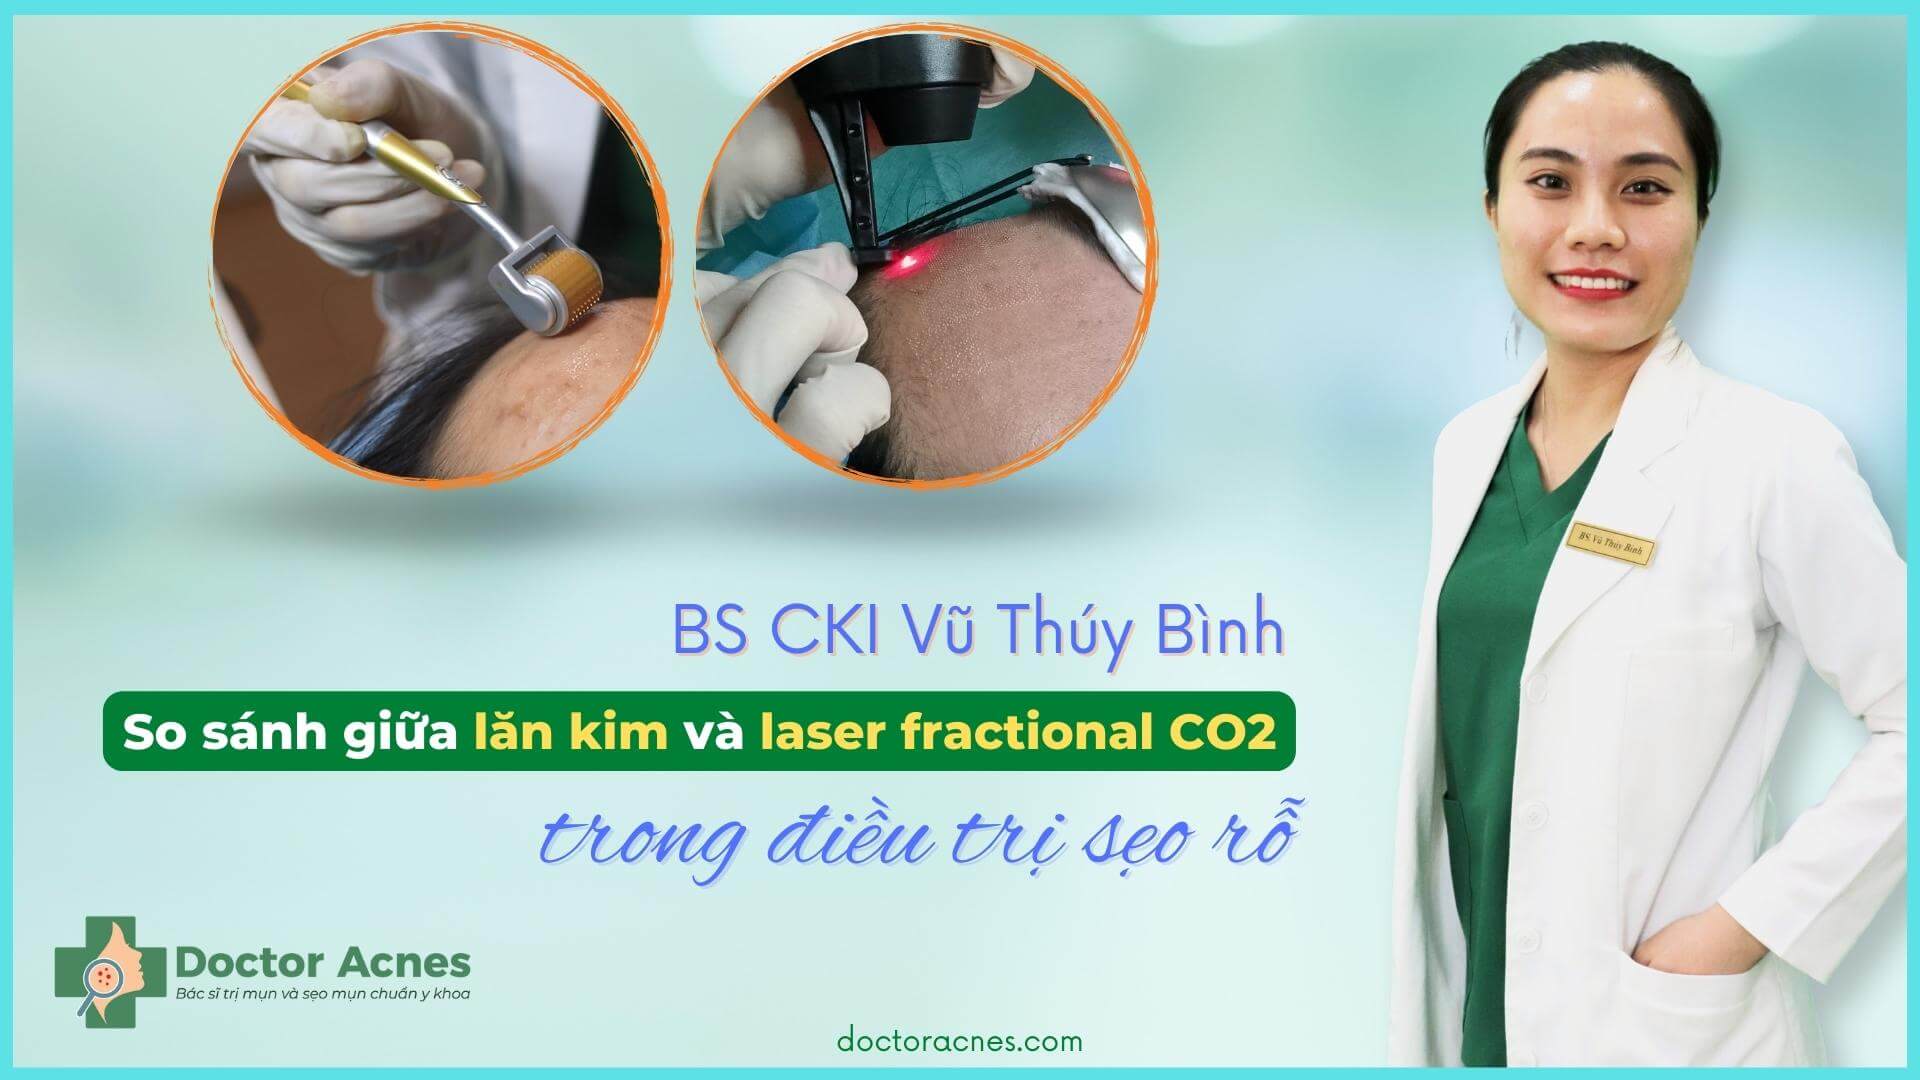 So sánh lăn kim và laser fractional CO2 - lời khuyên của Bác sĩ Da liễu - Doctor Acnes